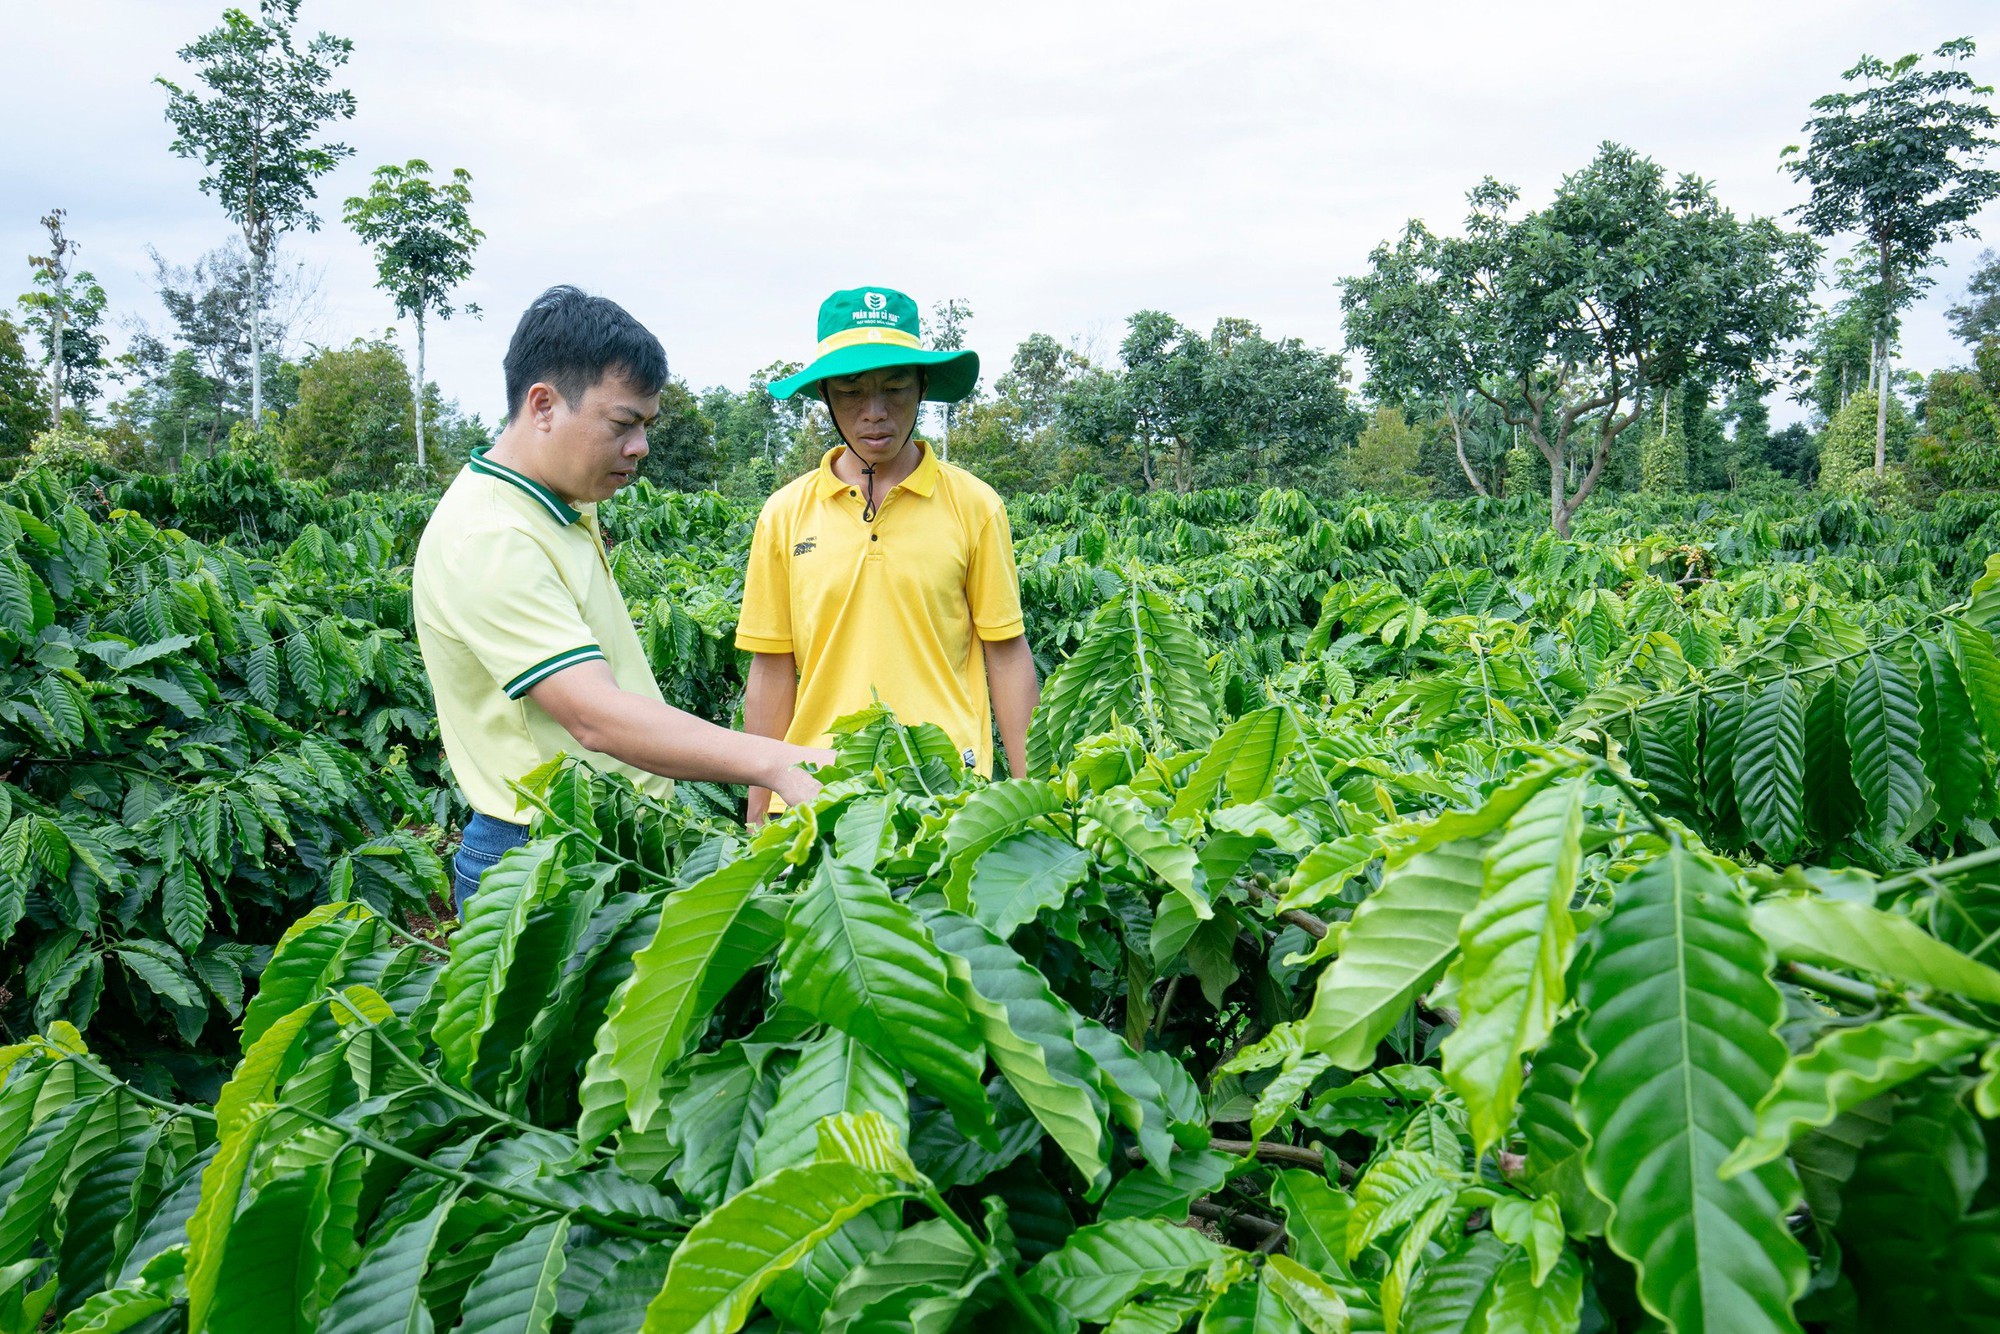 Giải pháp dinh dưỡng cho cà phê mùa khô ở Tây Nguyên - nông dân trải nghiệm NPK Cà  Mau công nghệ Polyphosphate - Ảnh 1.